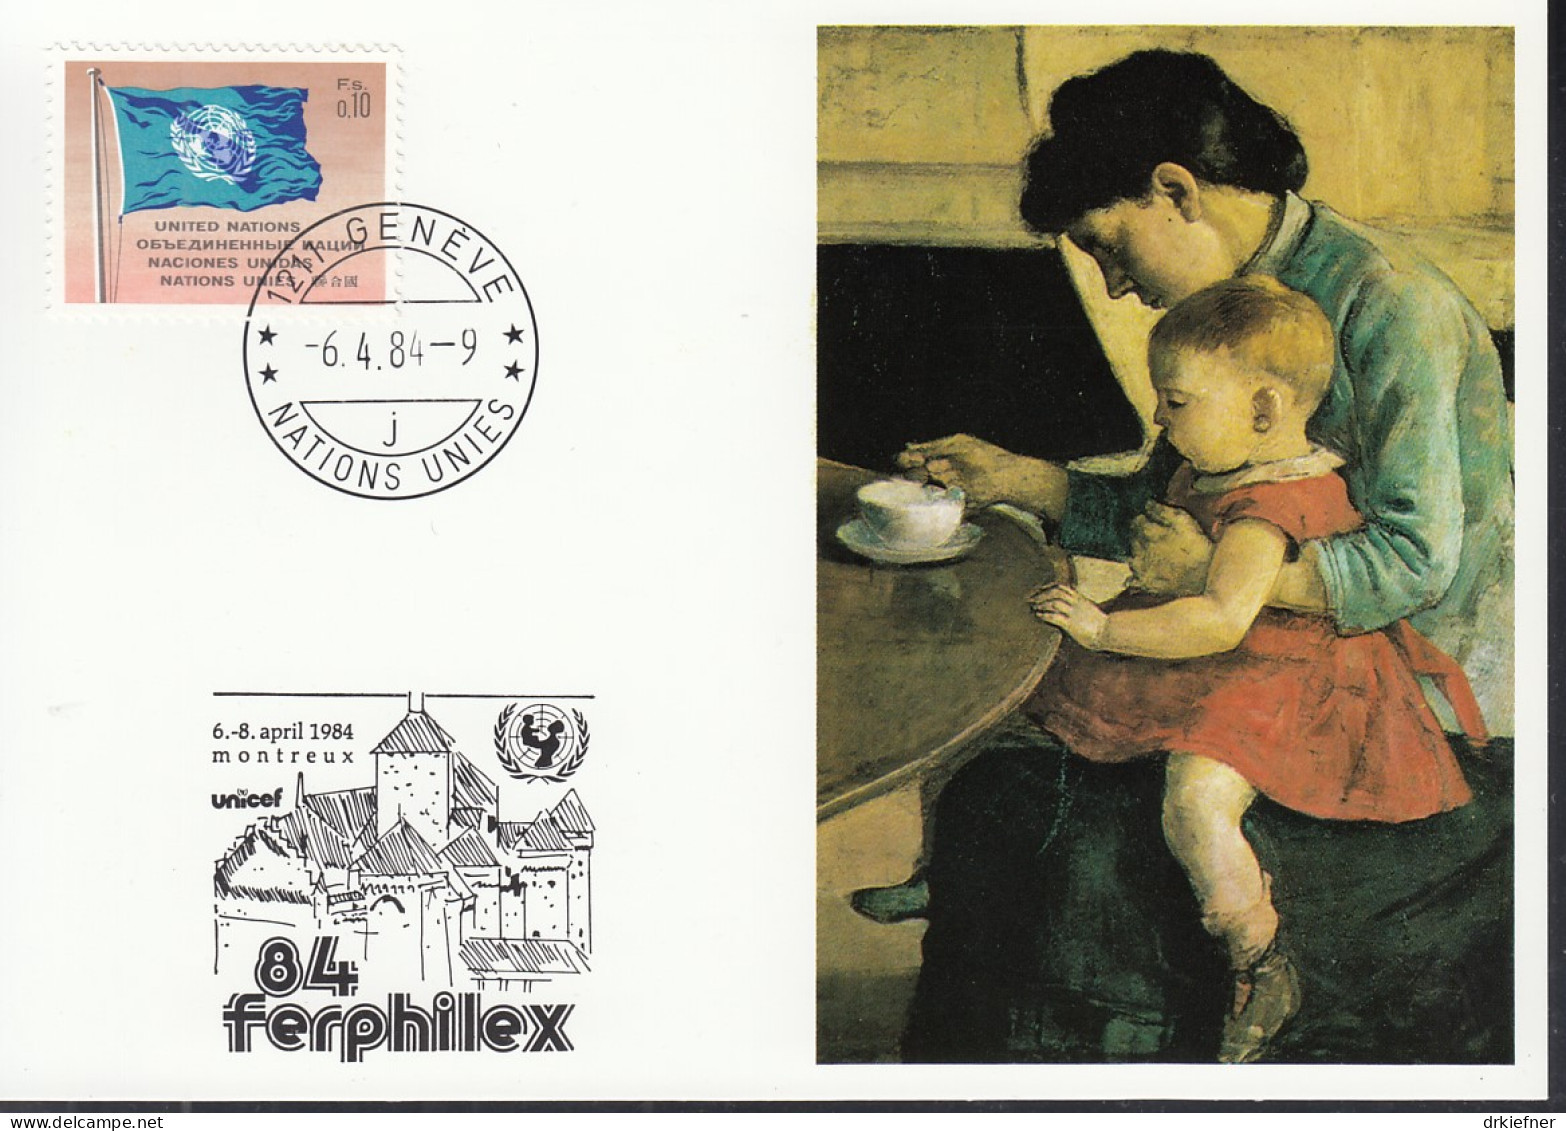 UNO NEW YORK  UNICEF-Kunstkarte, Mutter Und Kind Von Ferdinand Hodler, Aussellungskarte FERPHILEX Montreux, St: 6.4.1984 - Storia Postale